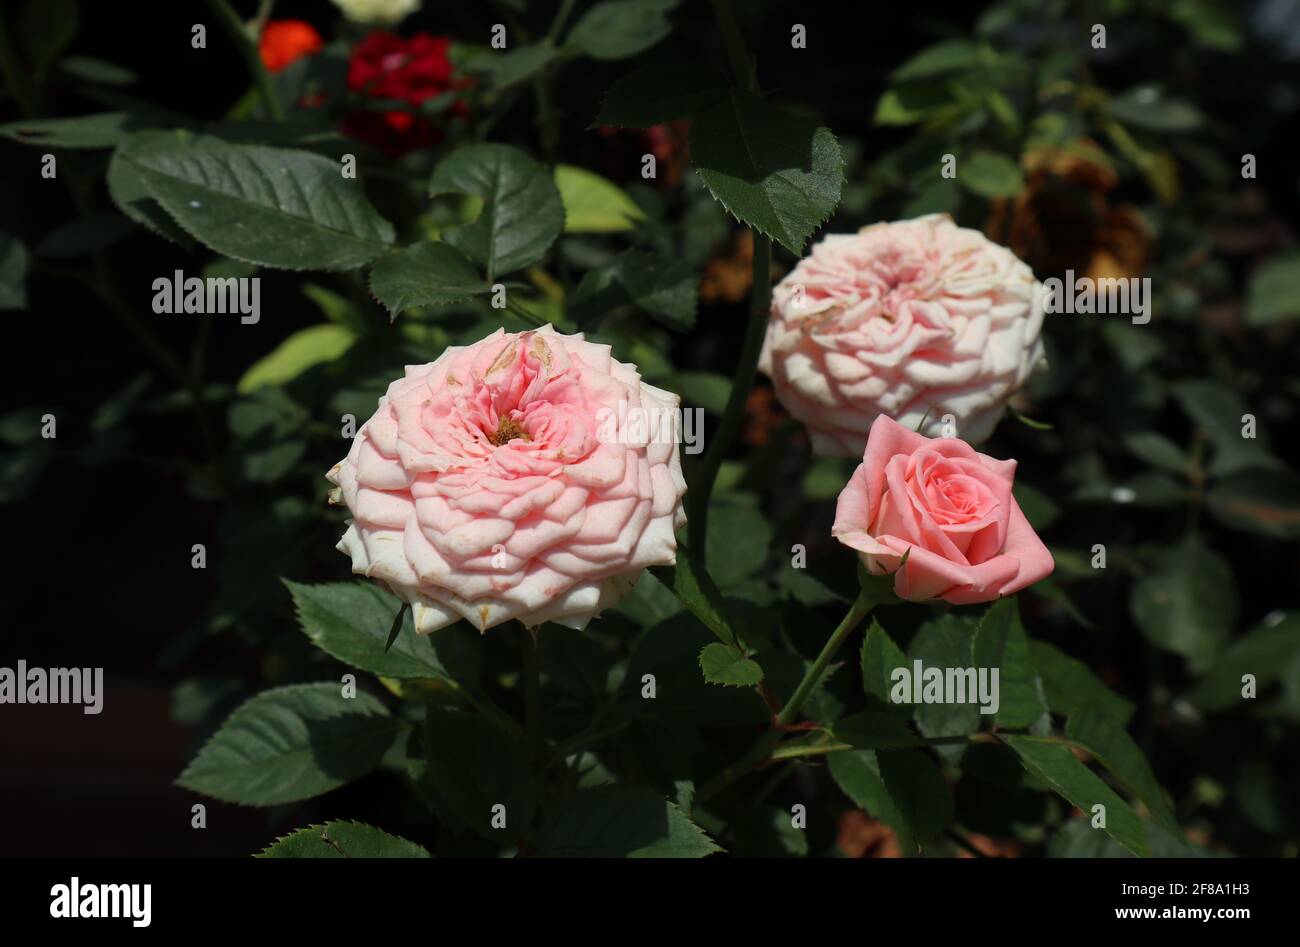 Nahaufnahme eines hellrosa Rosenzweiges mit einem Blühte Rosenblüte und eine blühende Rosenblüte Stockfoto